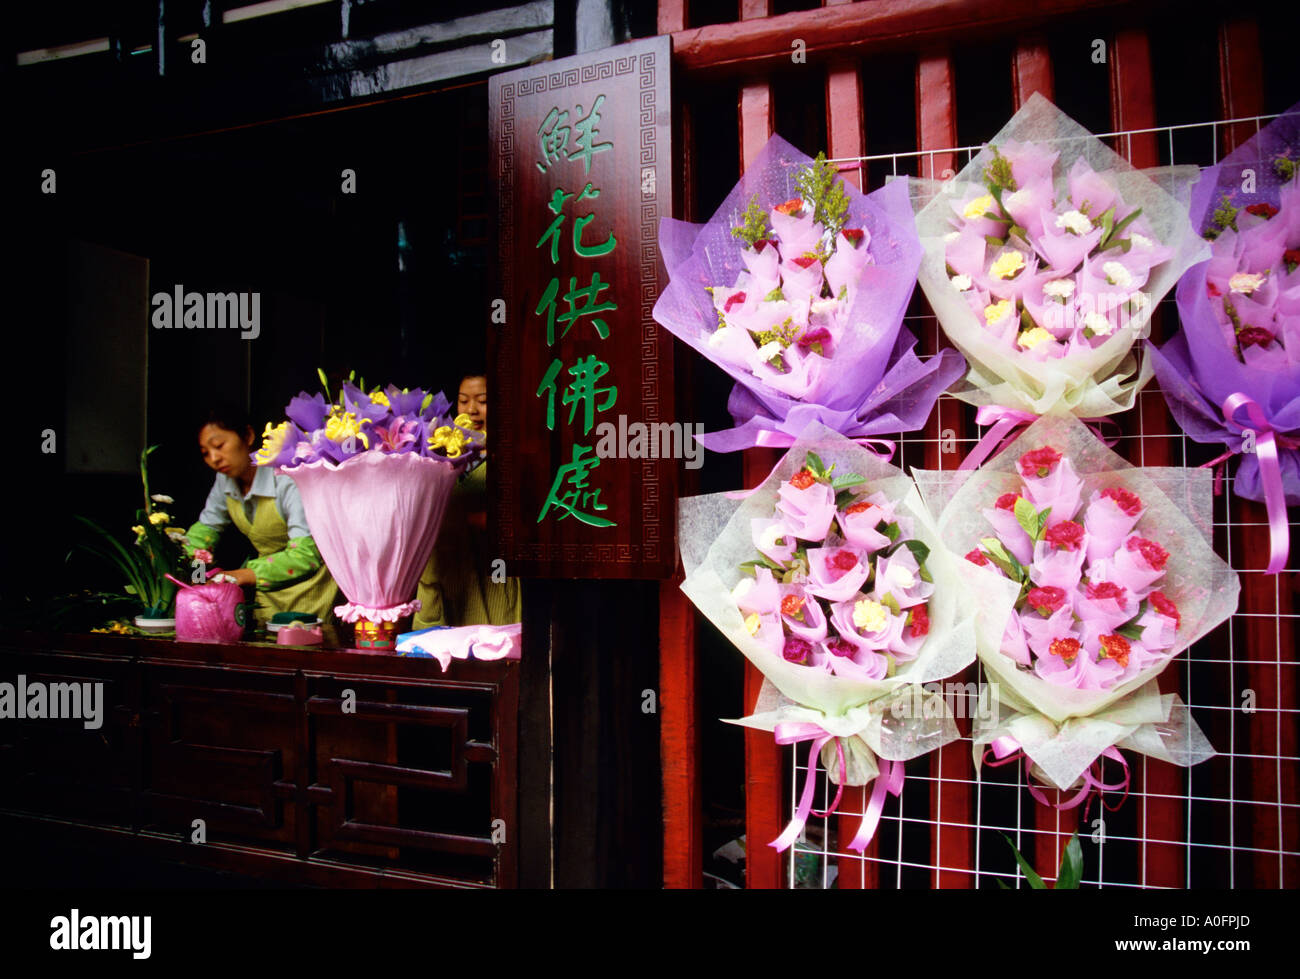 Chengdu, Sichuan, China - Wenshu Tempel Blume Stand Blumen für den Buddha Stockfoto